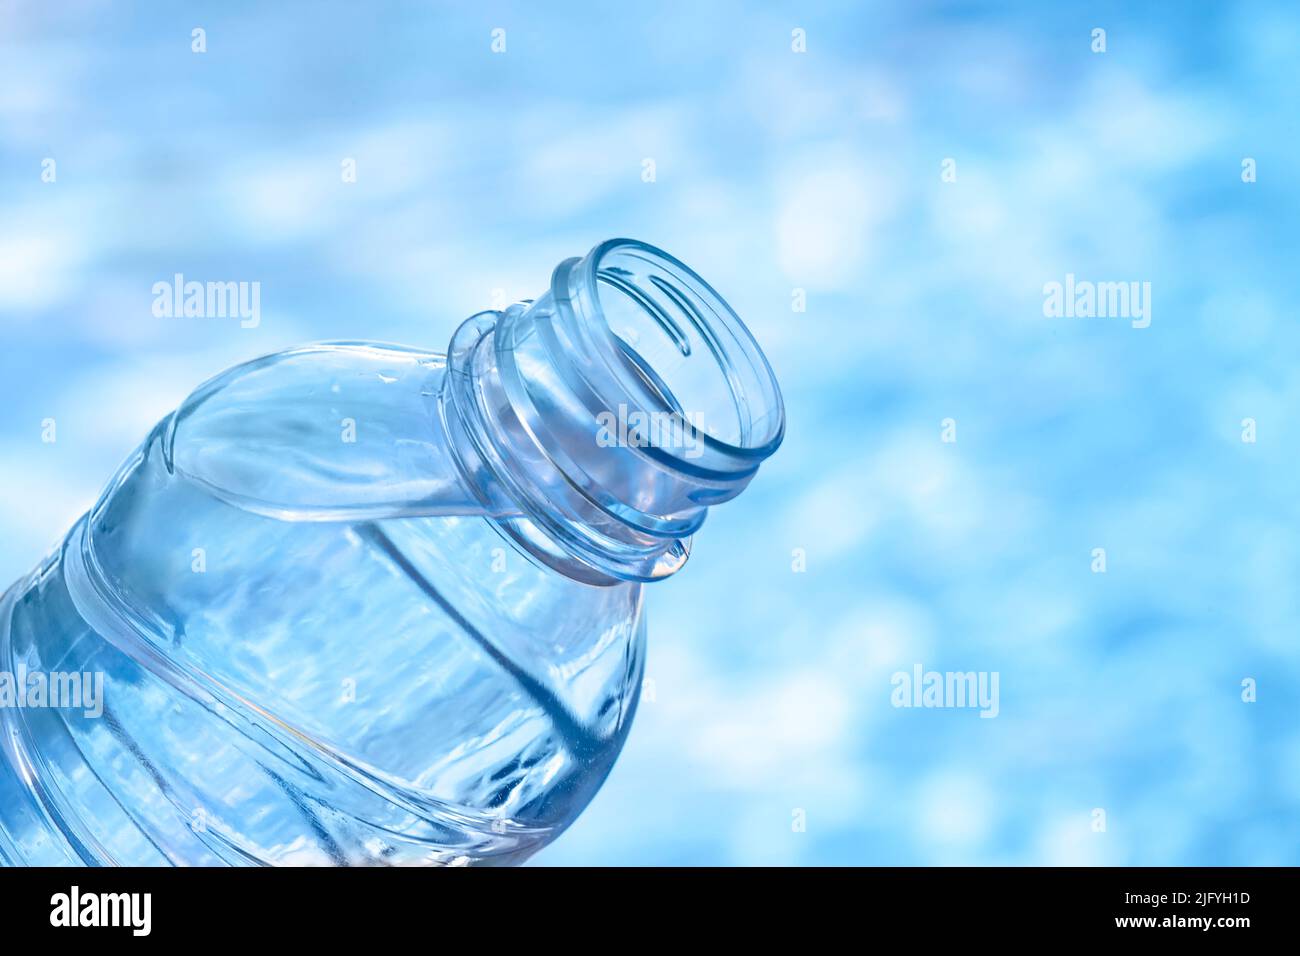 Botella de plástico de agua contra fondo azul Foto de stock